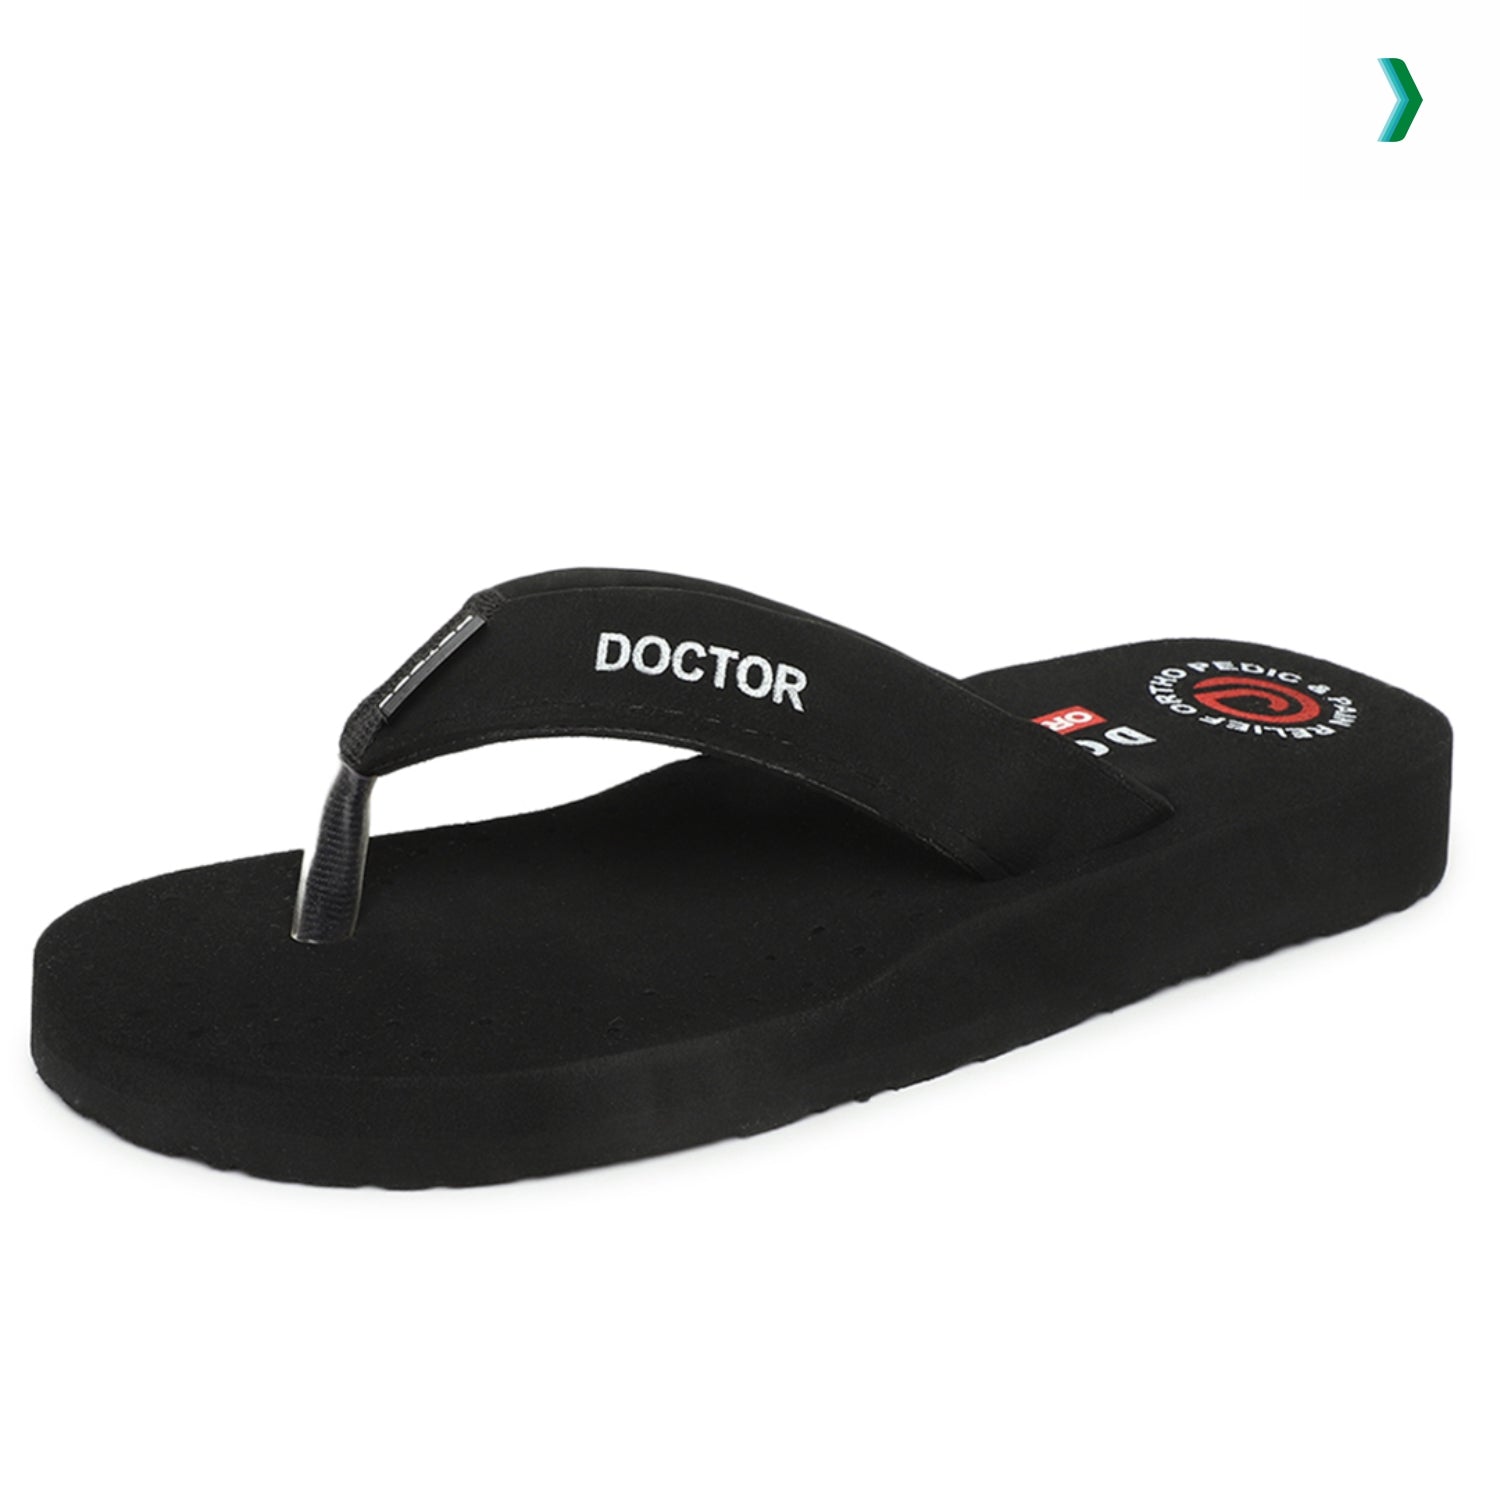 buy doctor ortho slippers, buy doctor ortho slippers for men